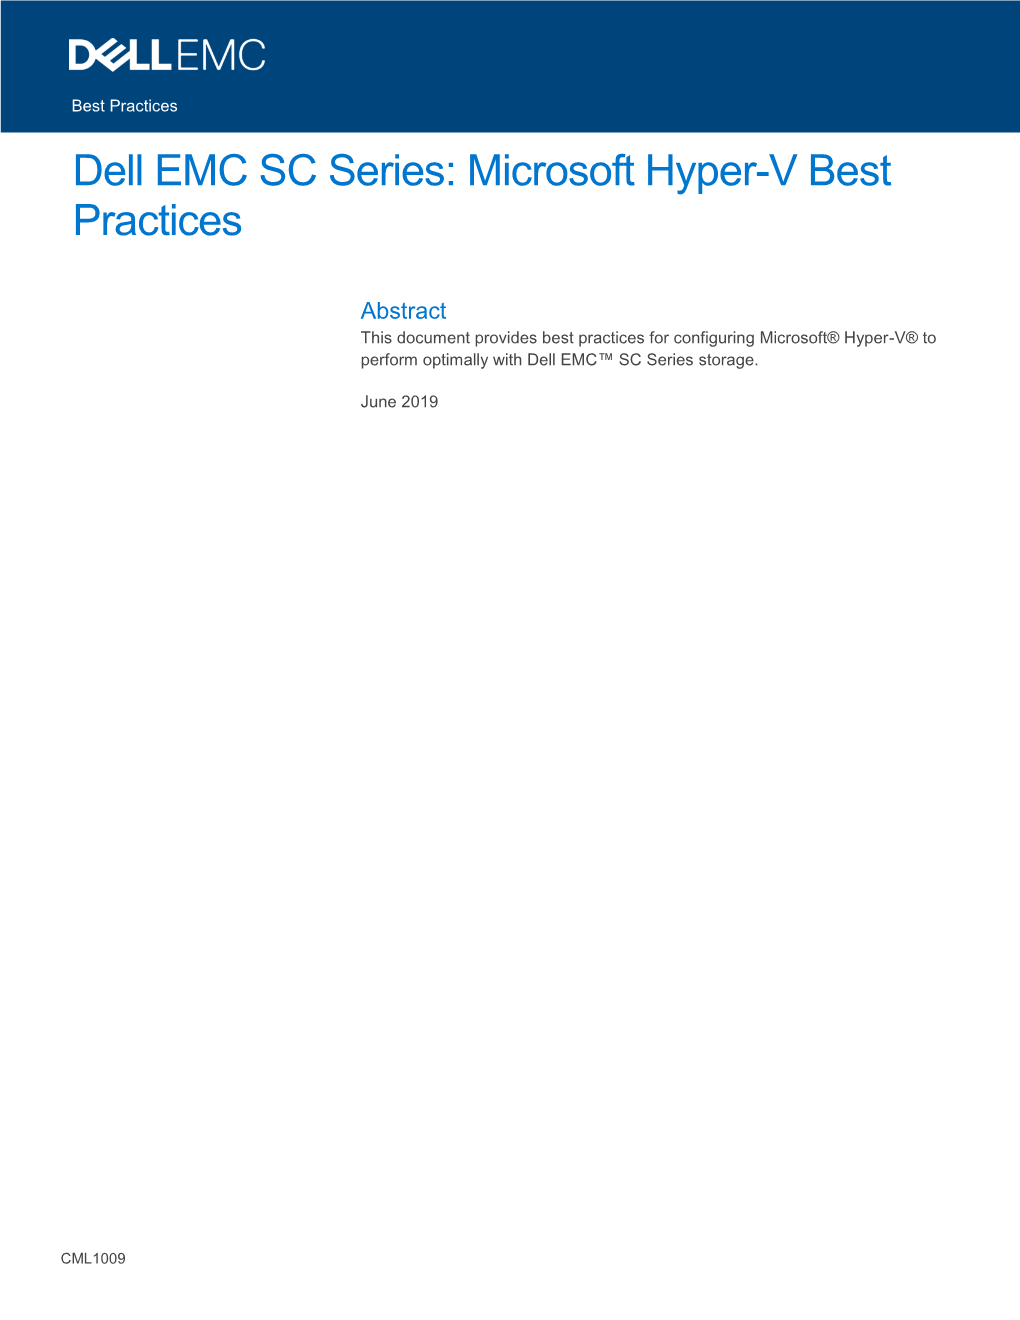 Dell EMC SC Series: Microsoft Hyper-V Best Practices